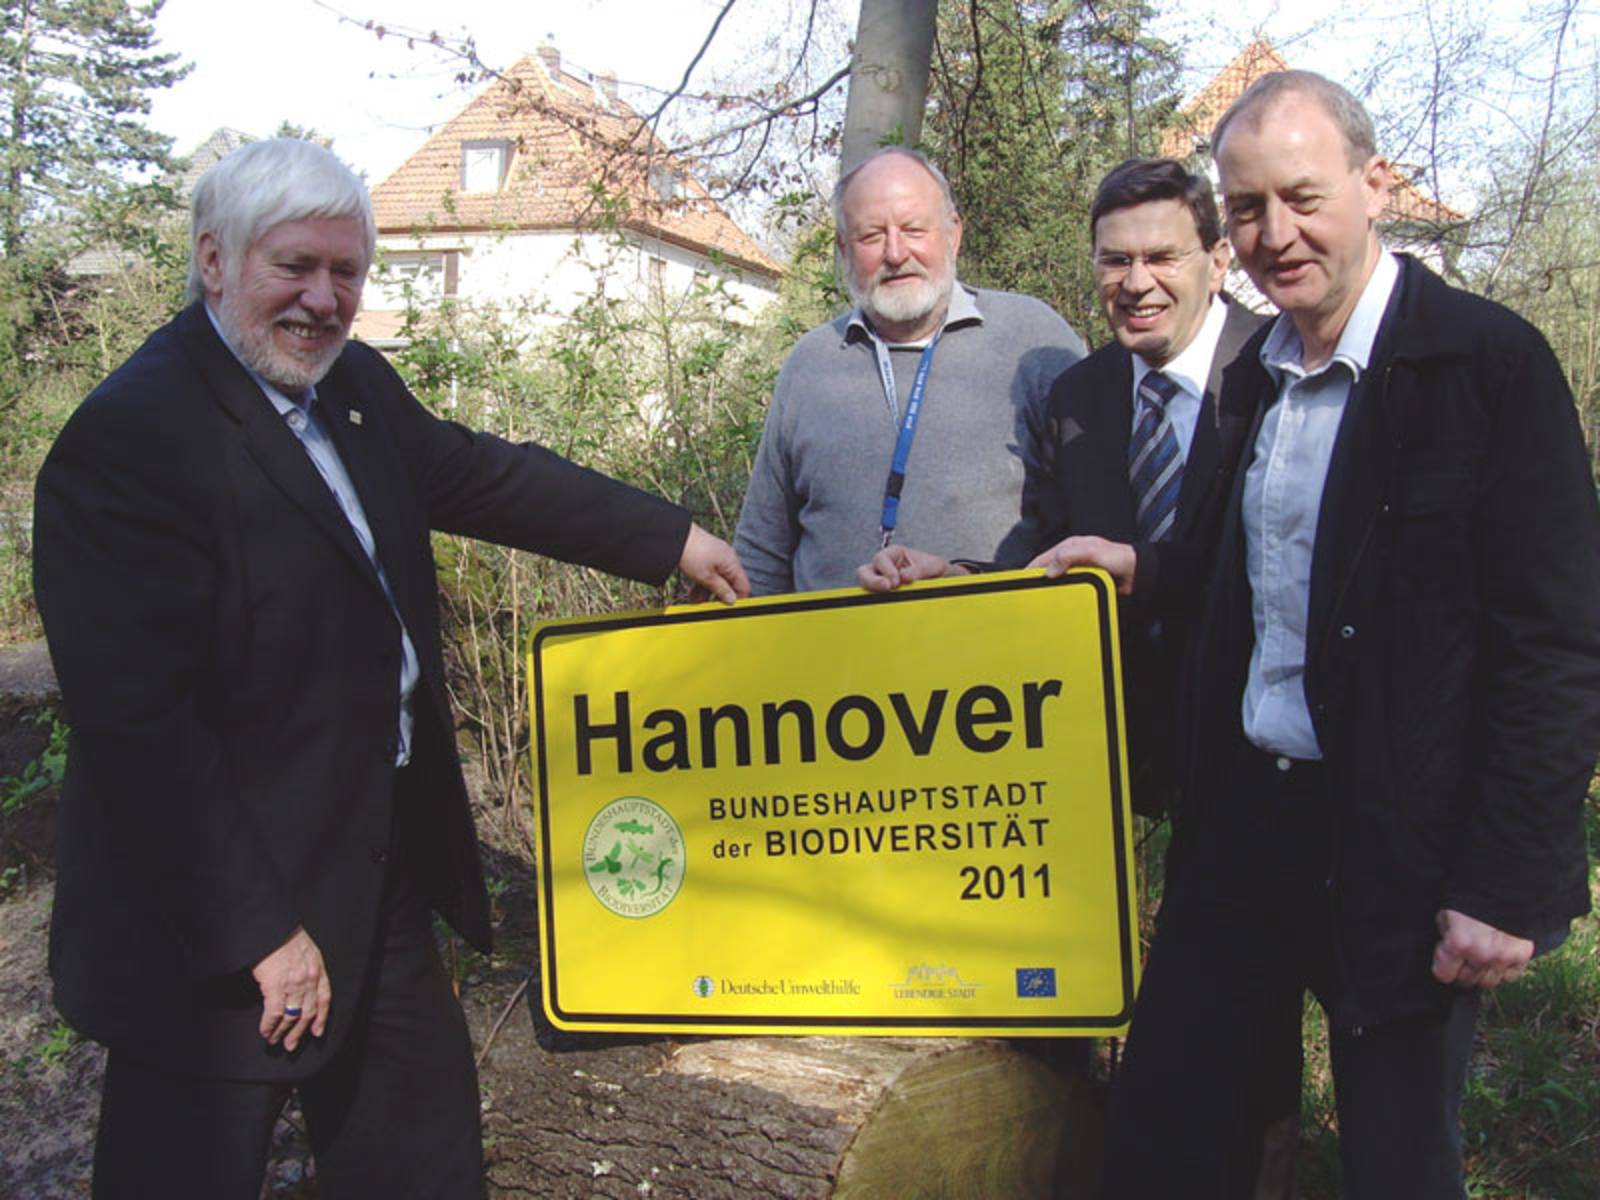 Hannover-Ortsschild mit Zusatz "Bundeshauptstadt der Biodiversität 2011"